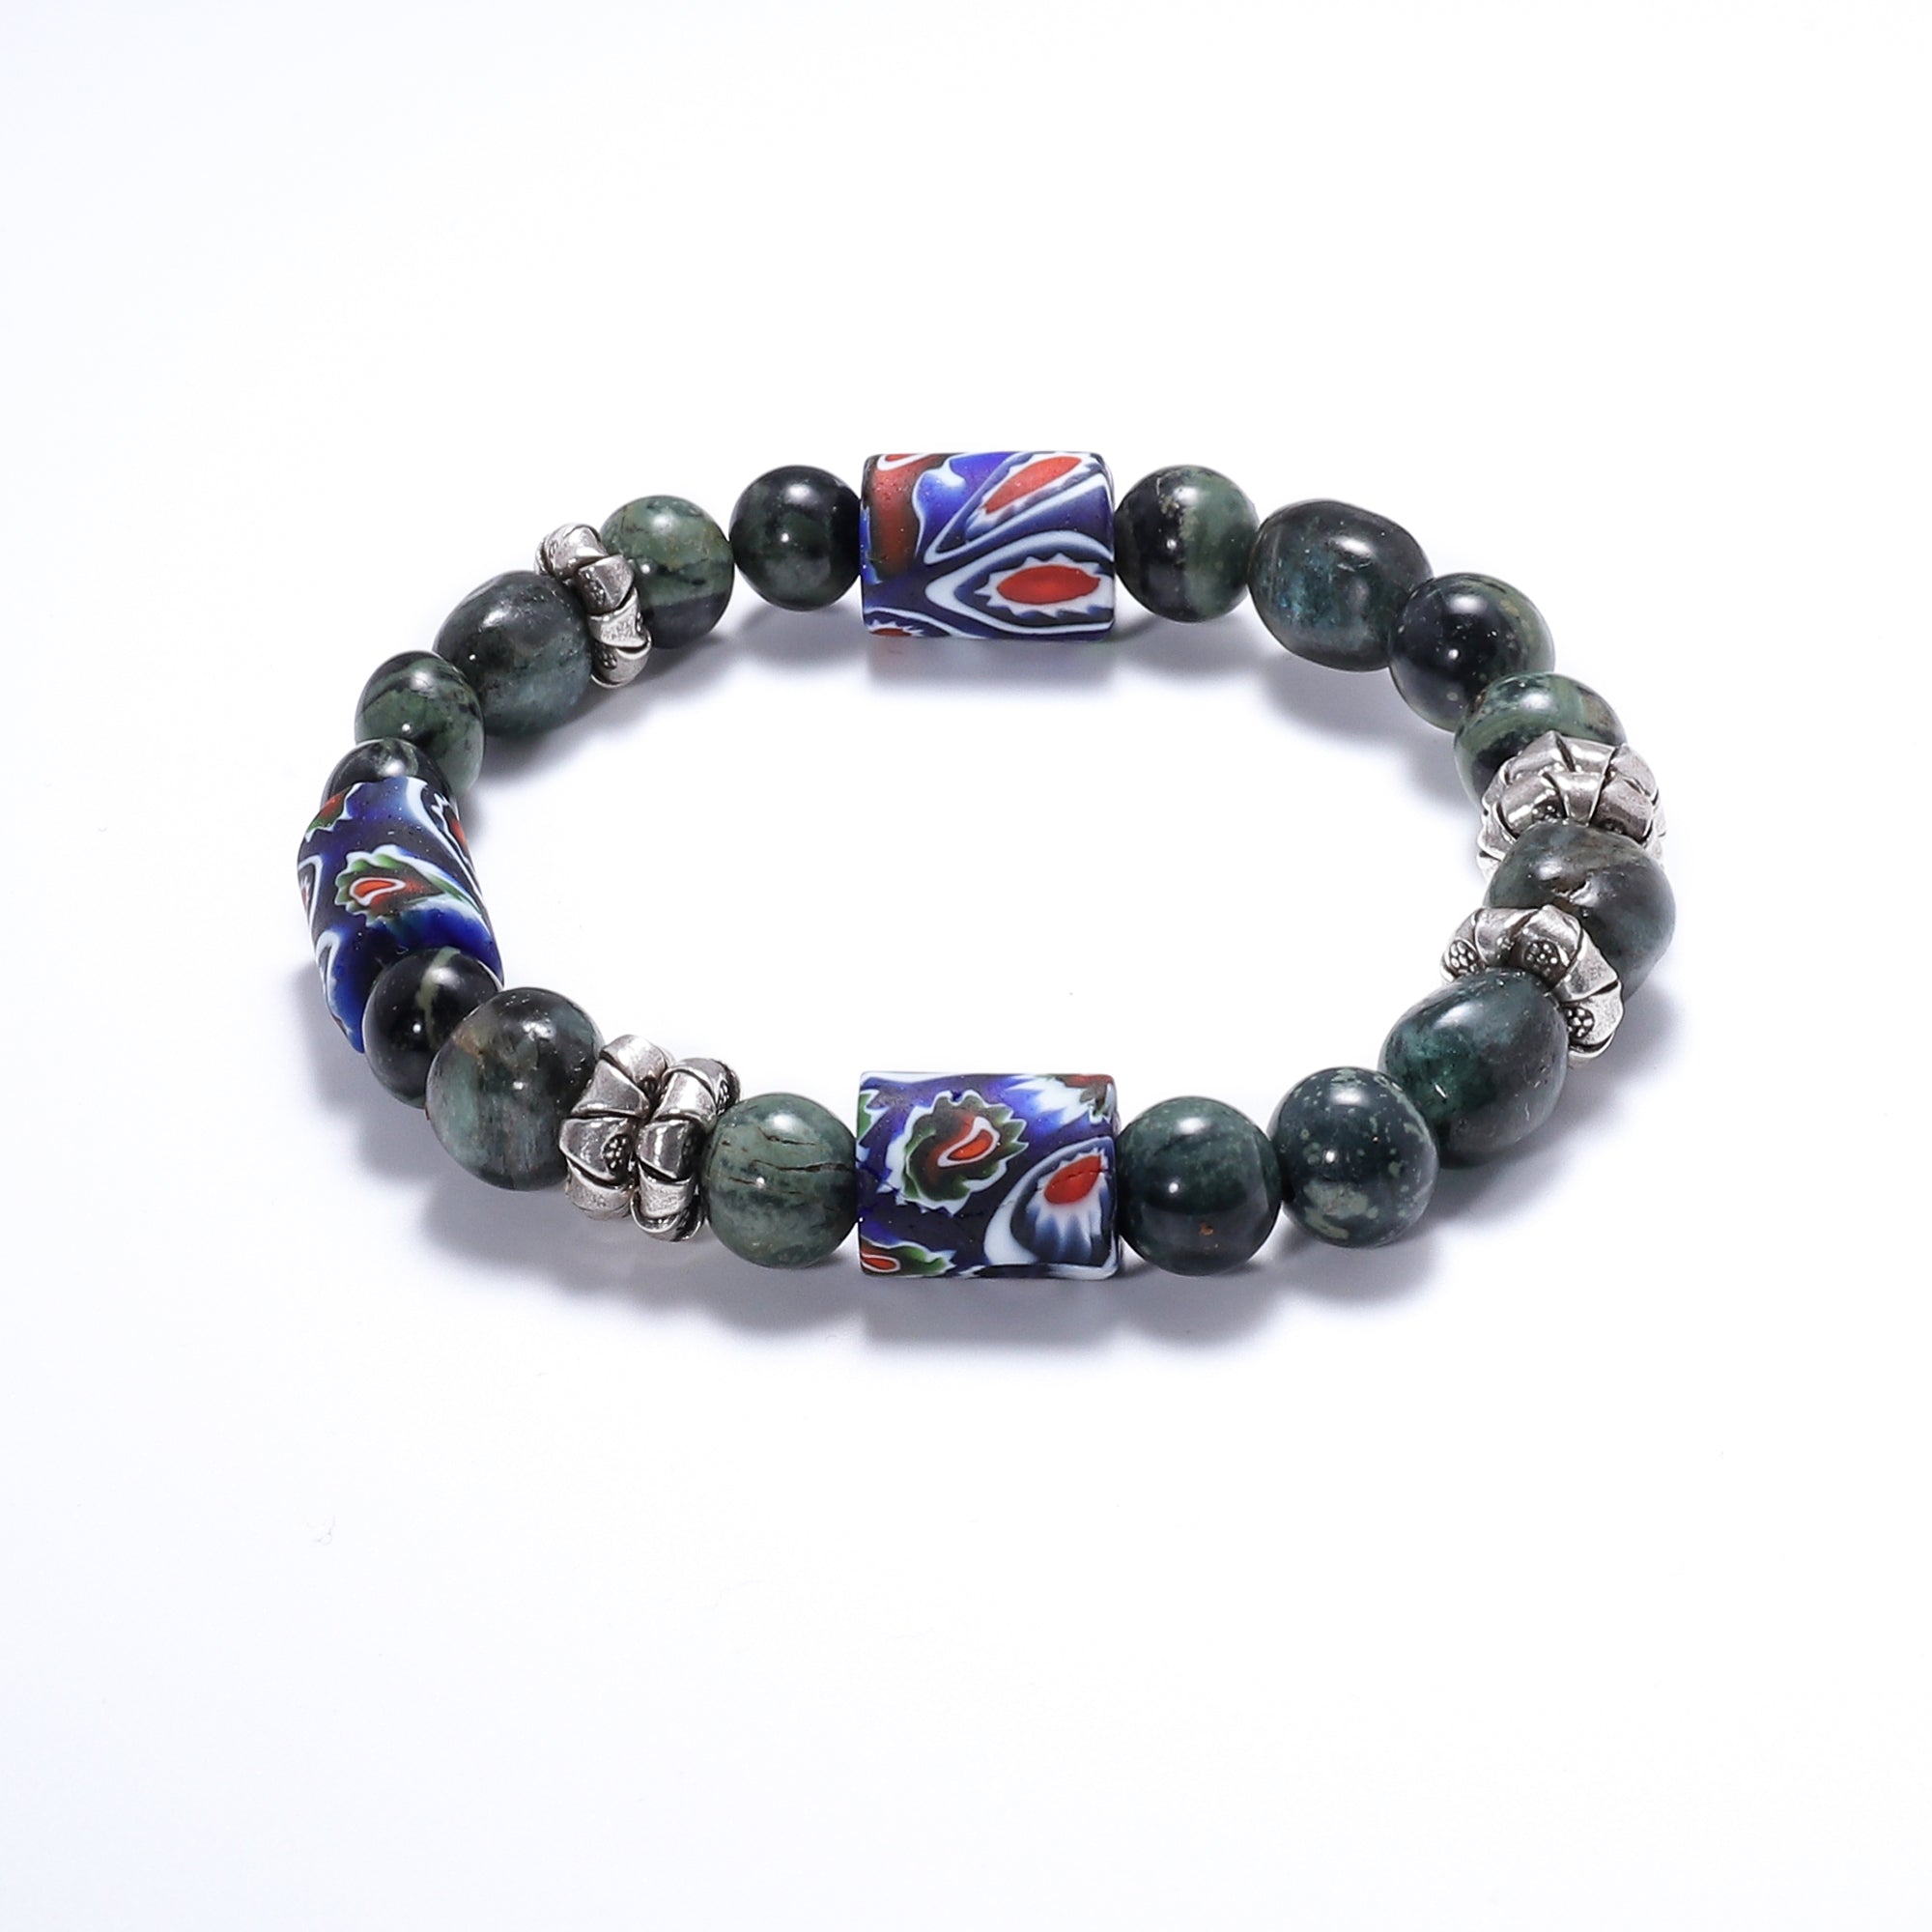 Natural Stone Bracelets for Men - Green Hawk's Eye stones